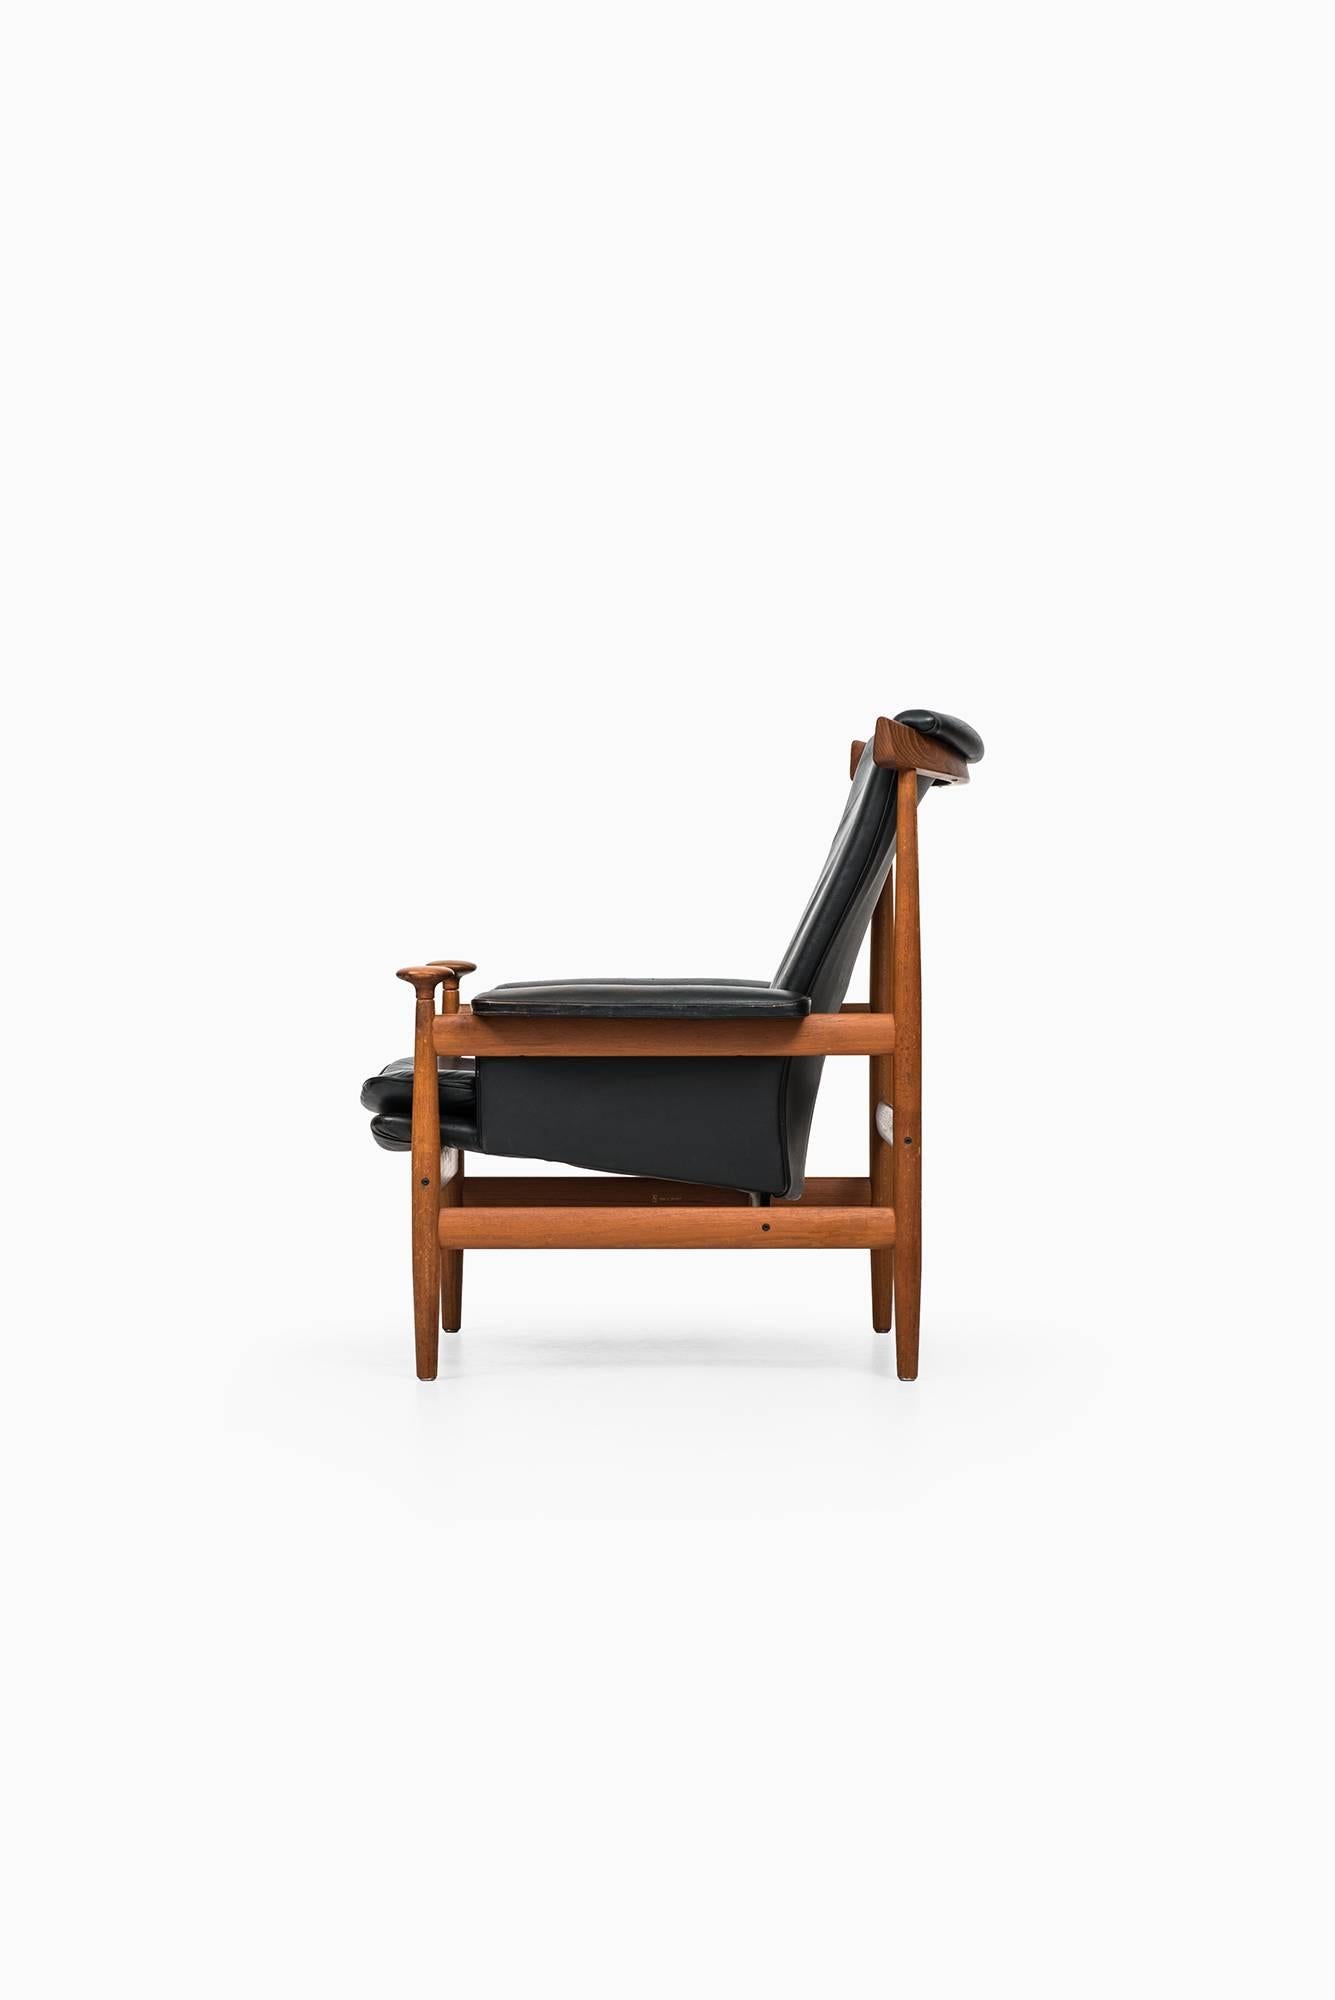 Rare easy chair model Bwana designed by Finn Juhl. Produced by France & Daverkosen in Denmark.